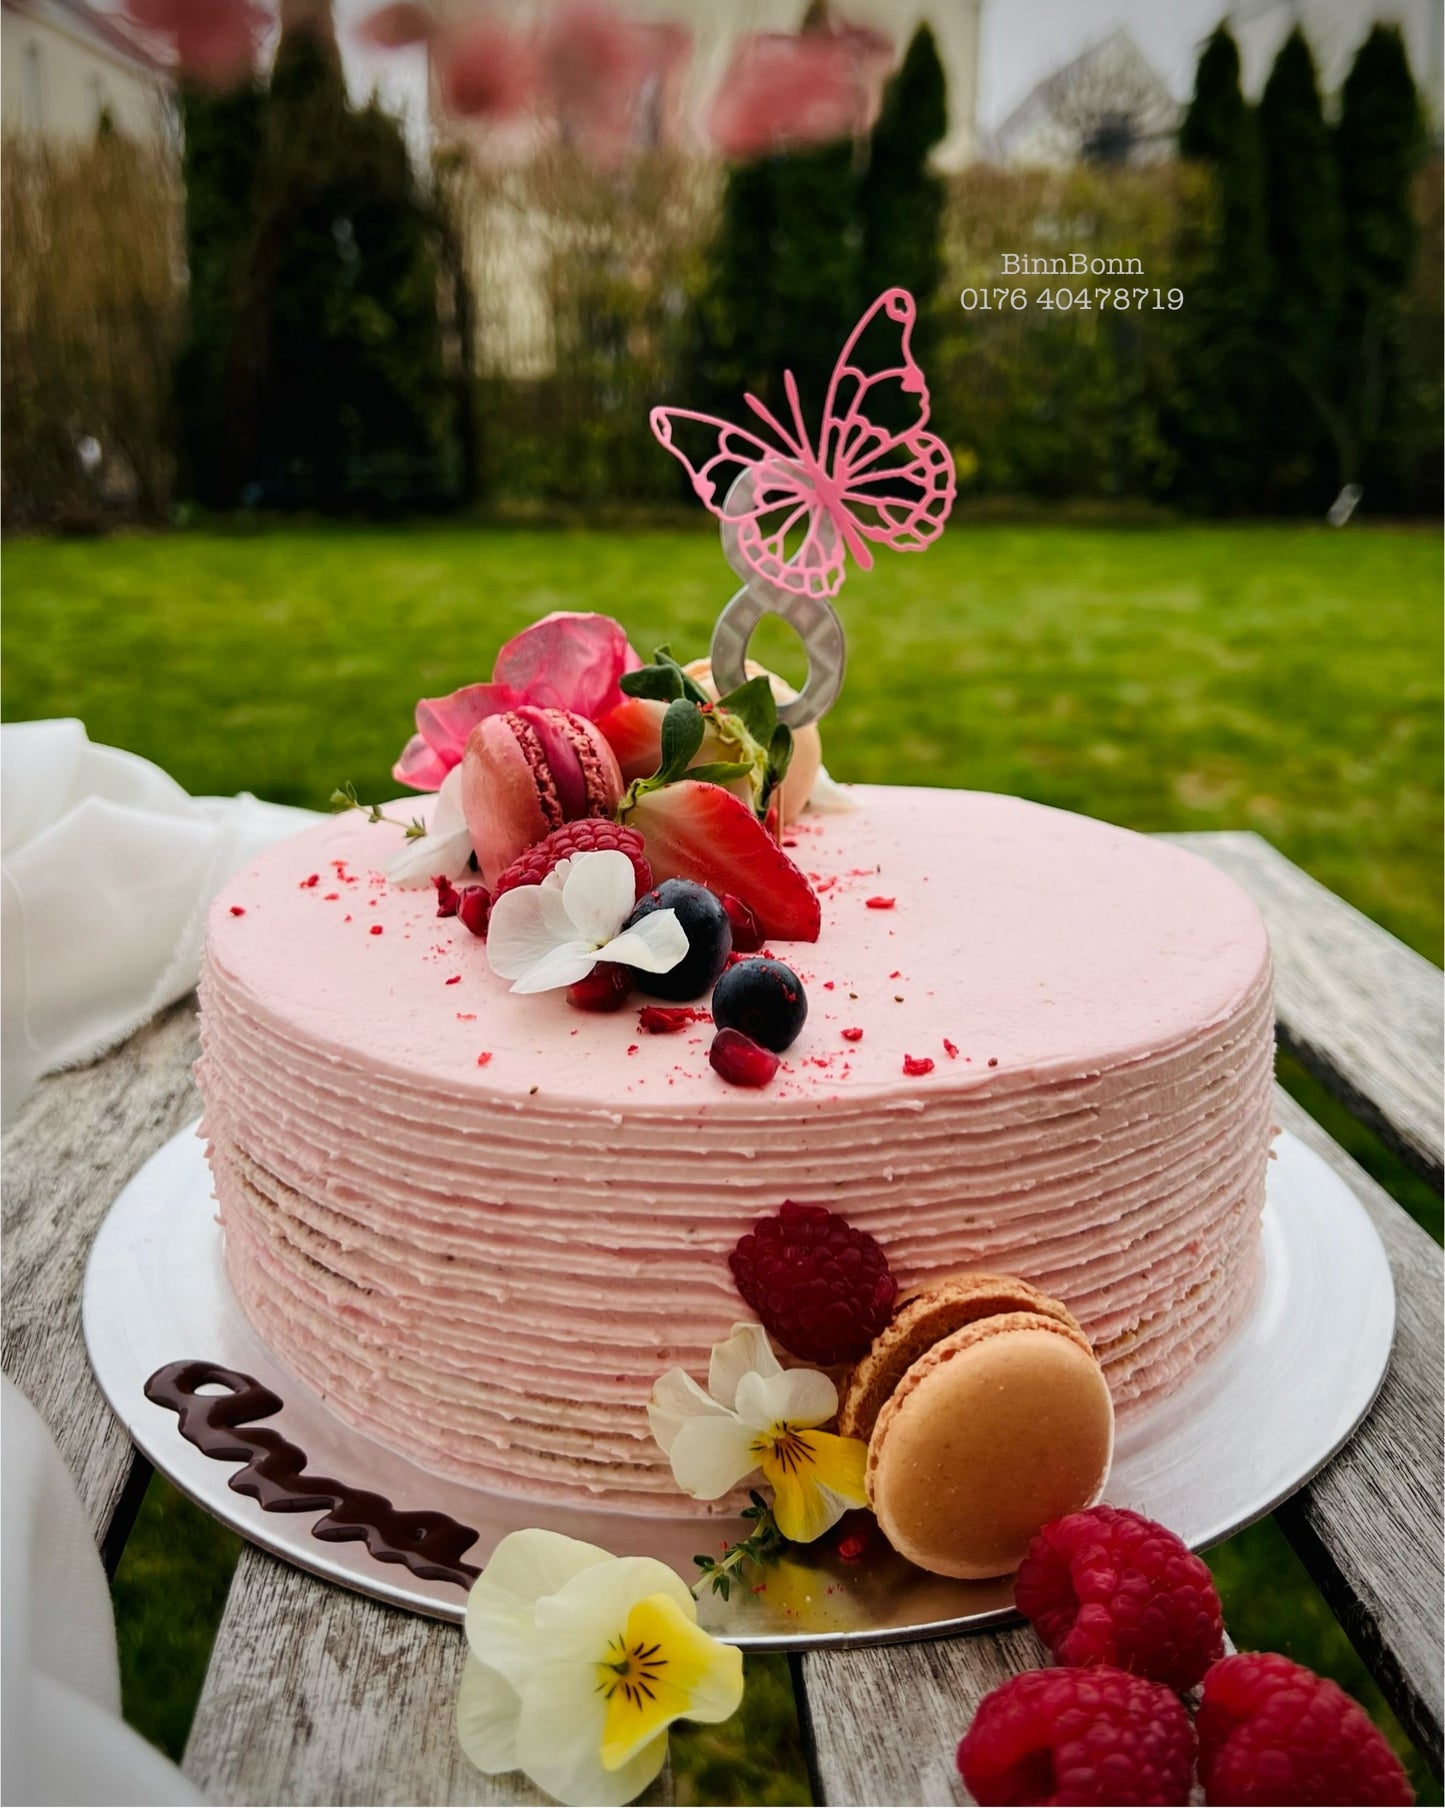 45. Torte "Pink Dream" mit frischen Beeren und essbaren Blüten 20 cm